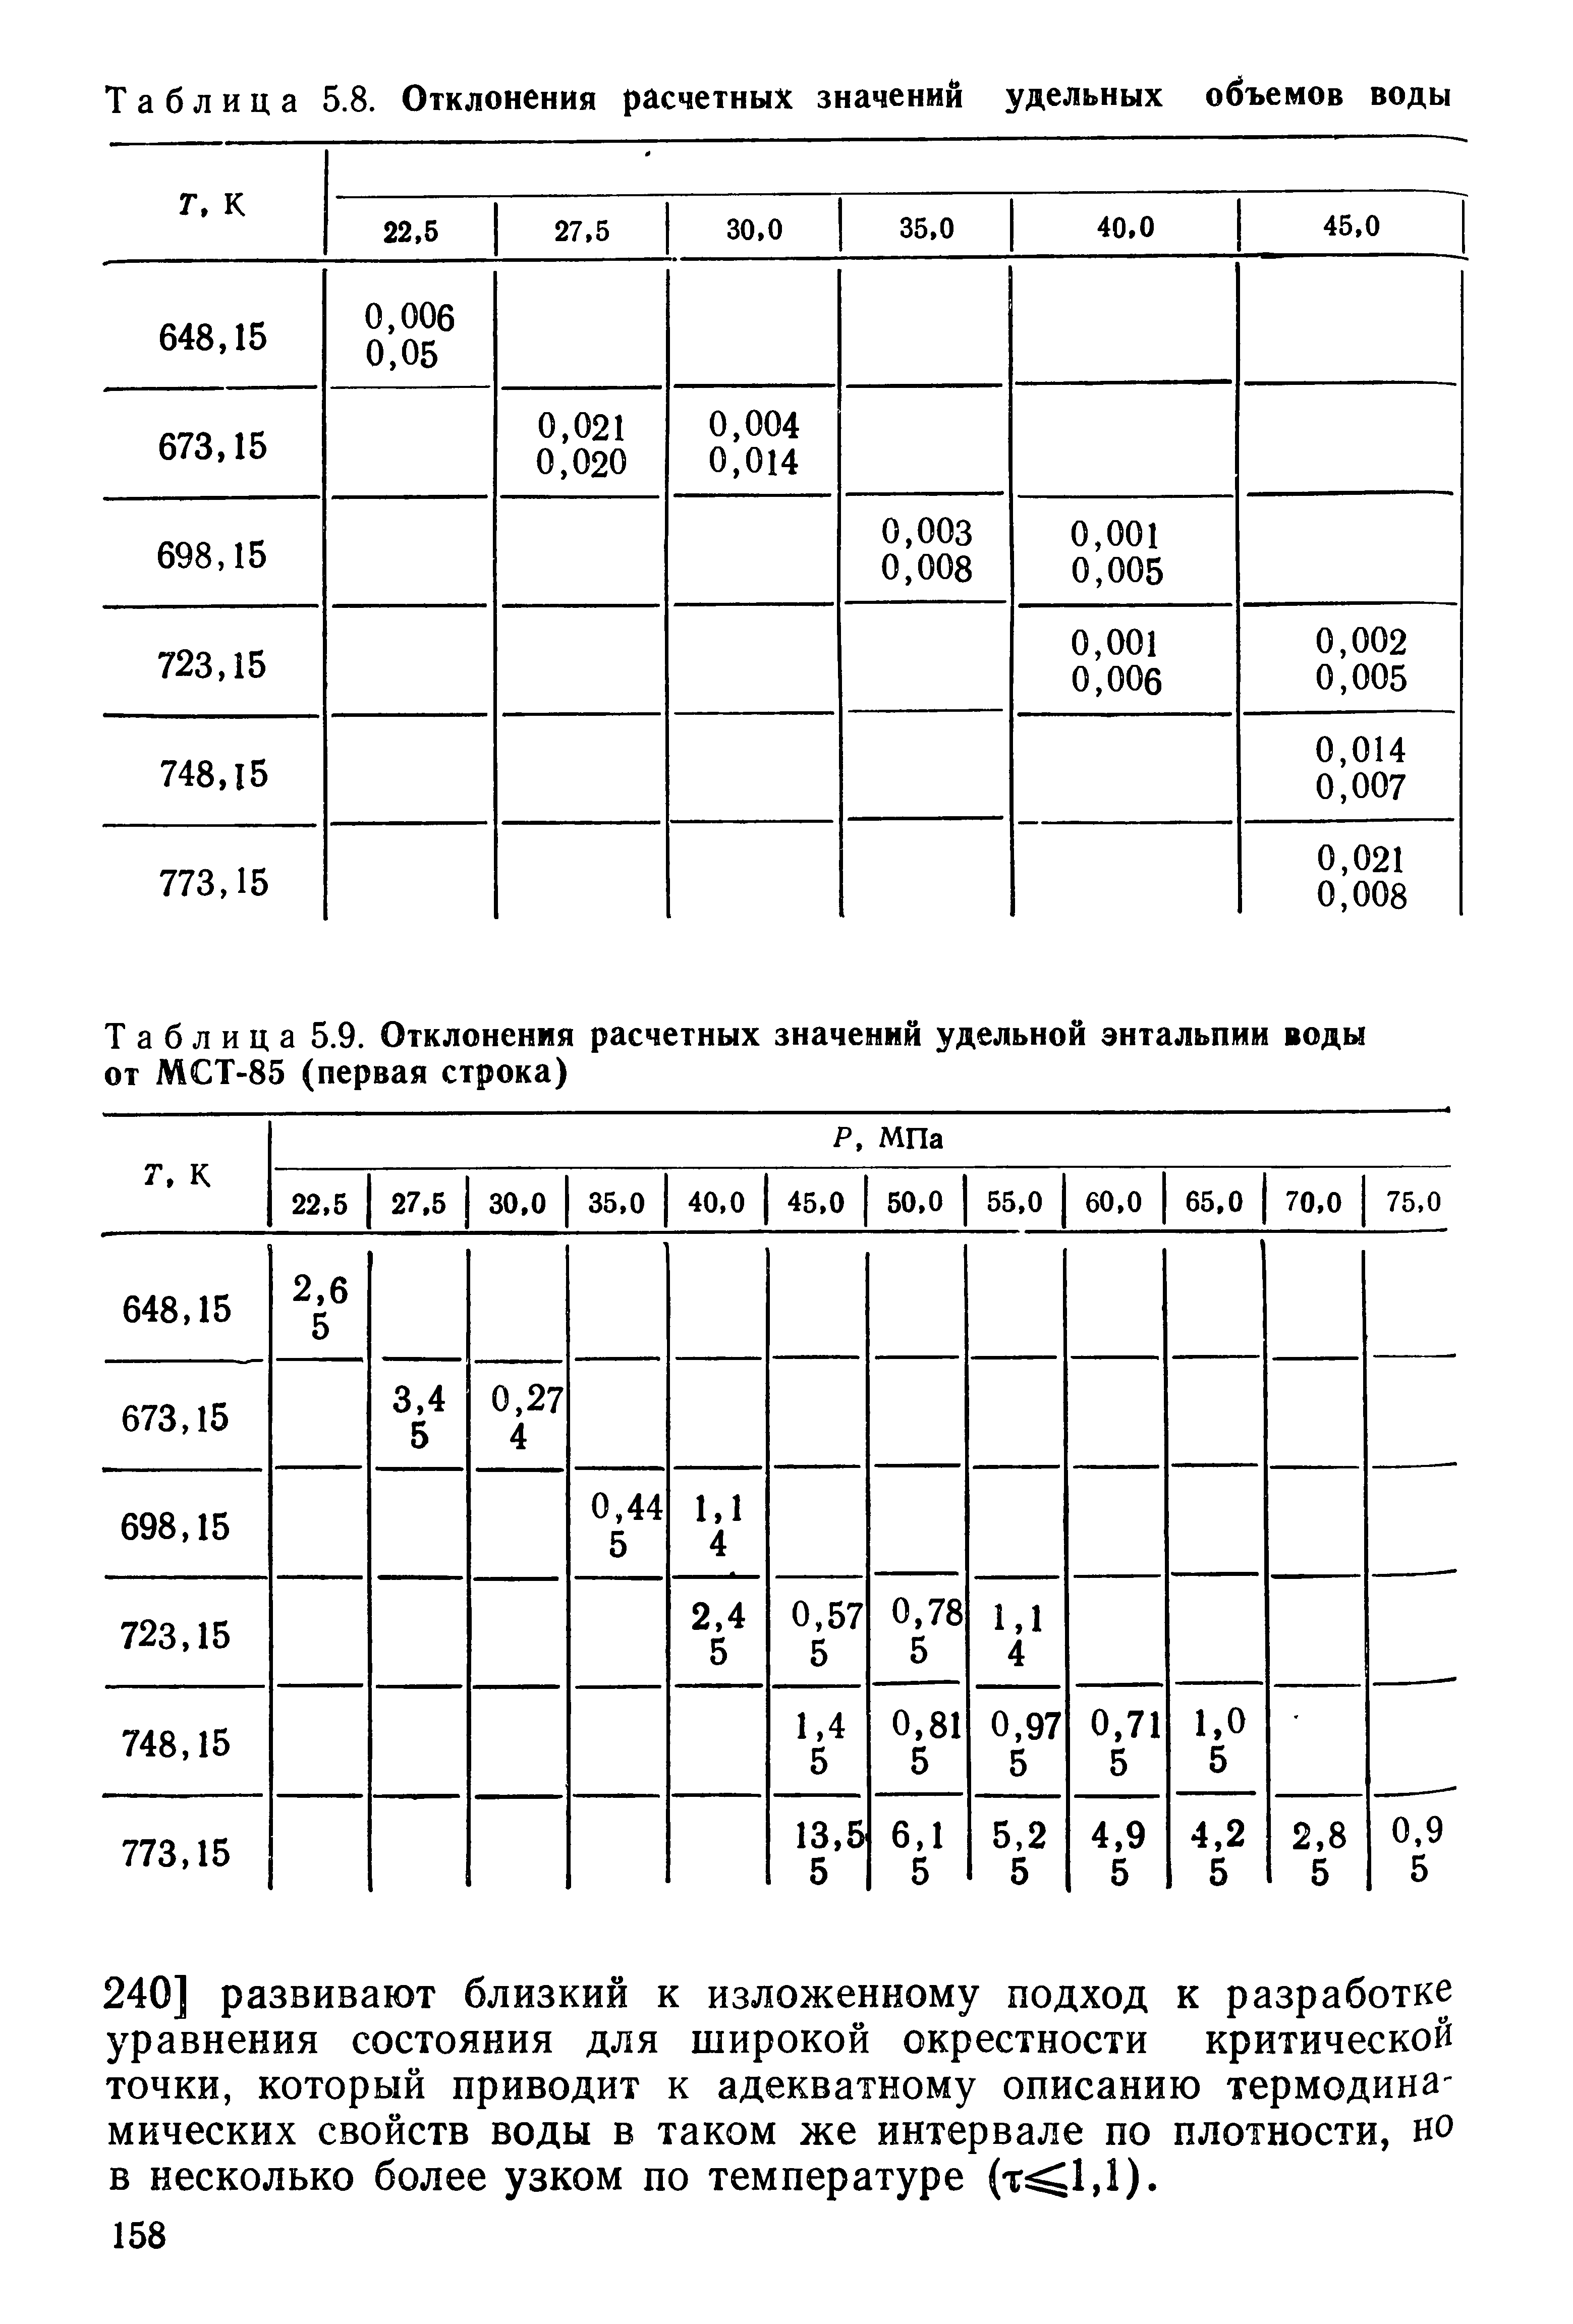 Таблица 5.8. Отклонения расчетных <a href="/info/196804">значений удельных</a> объемов воды
